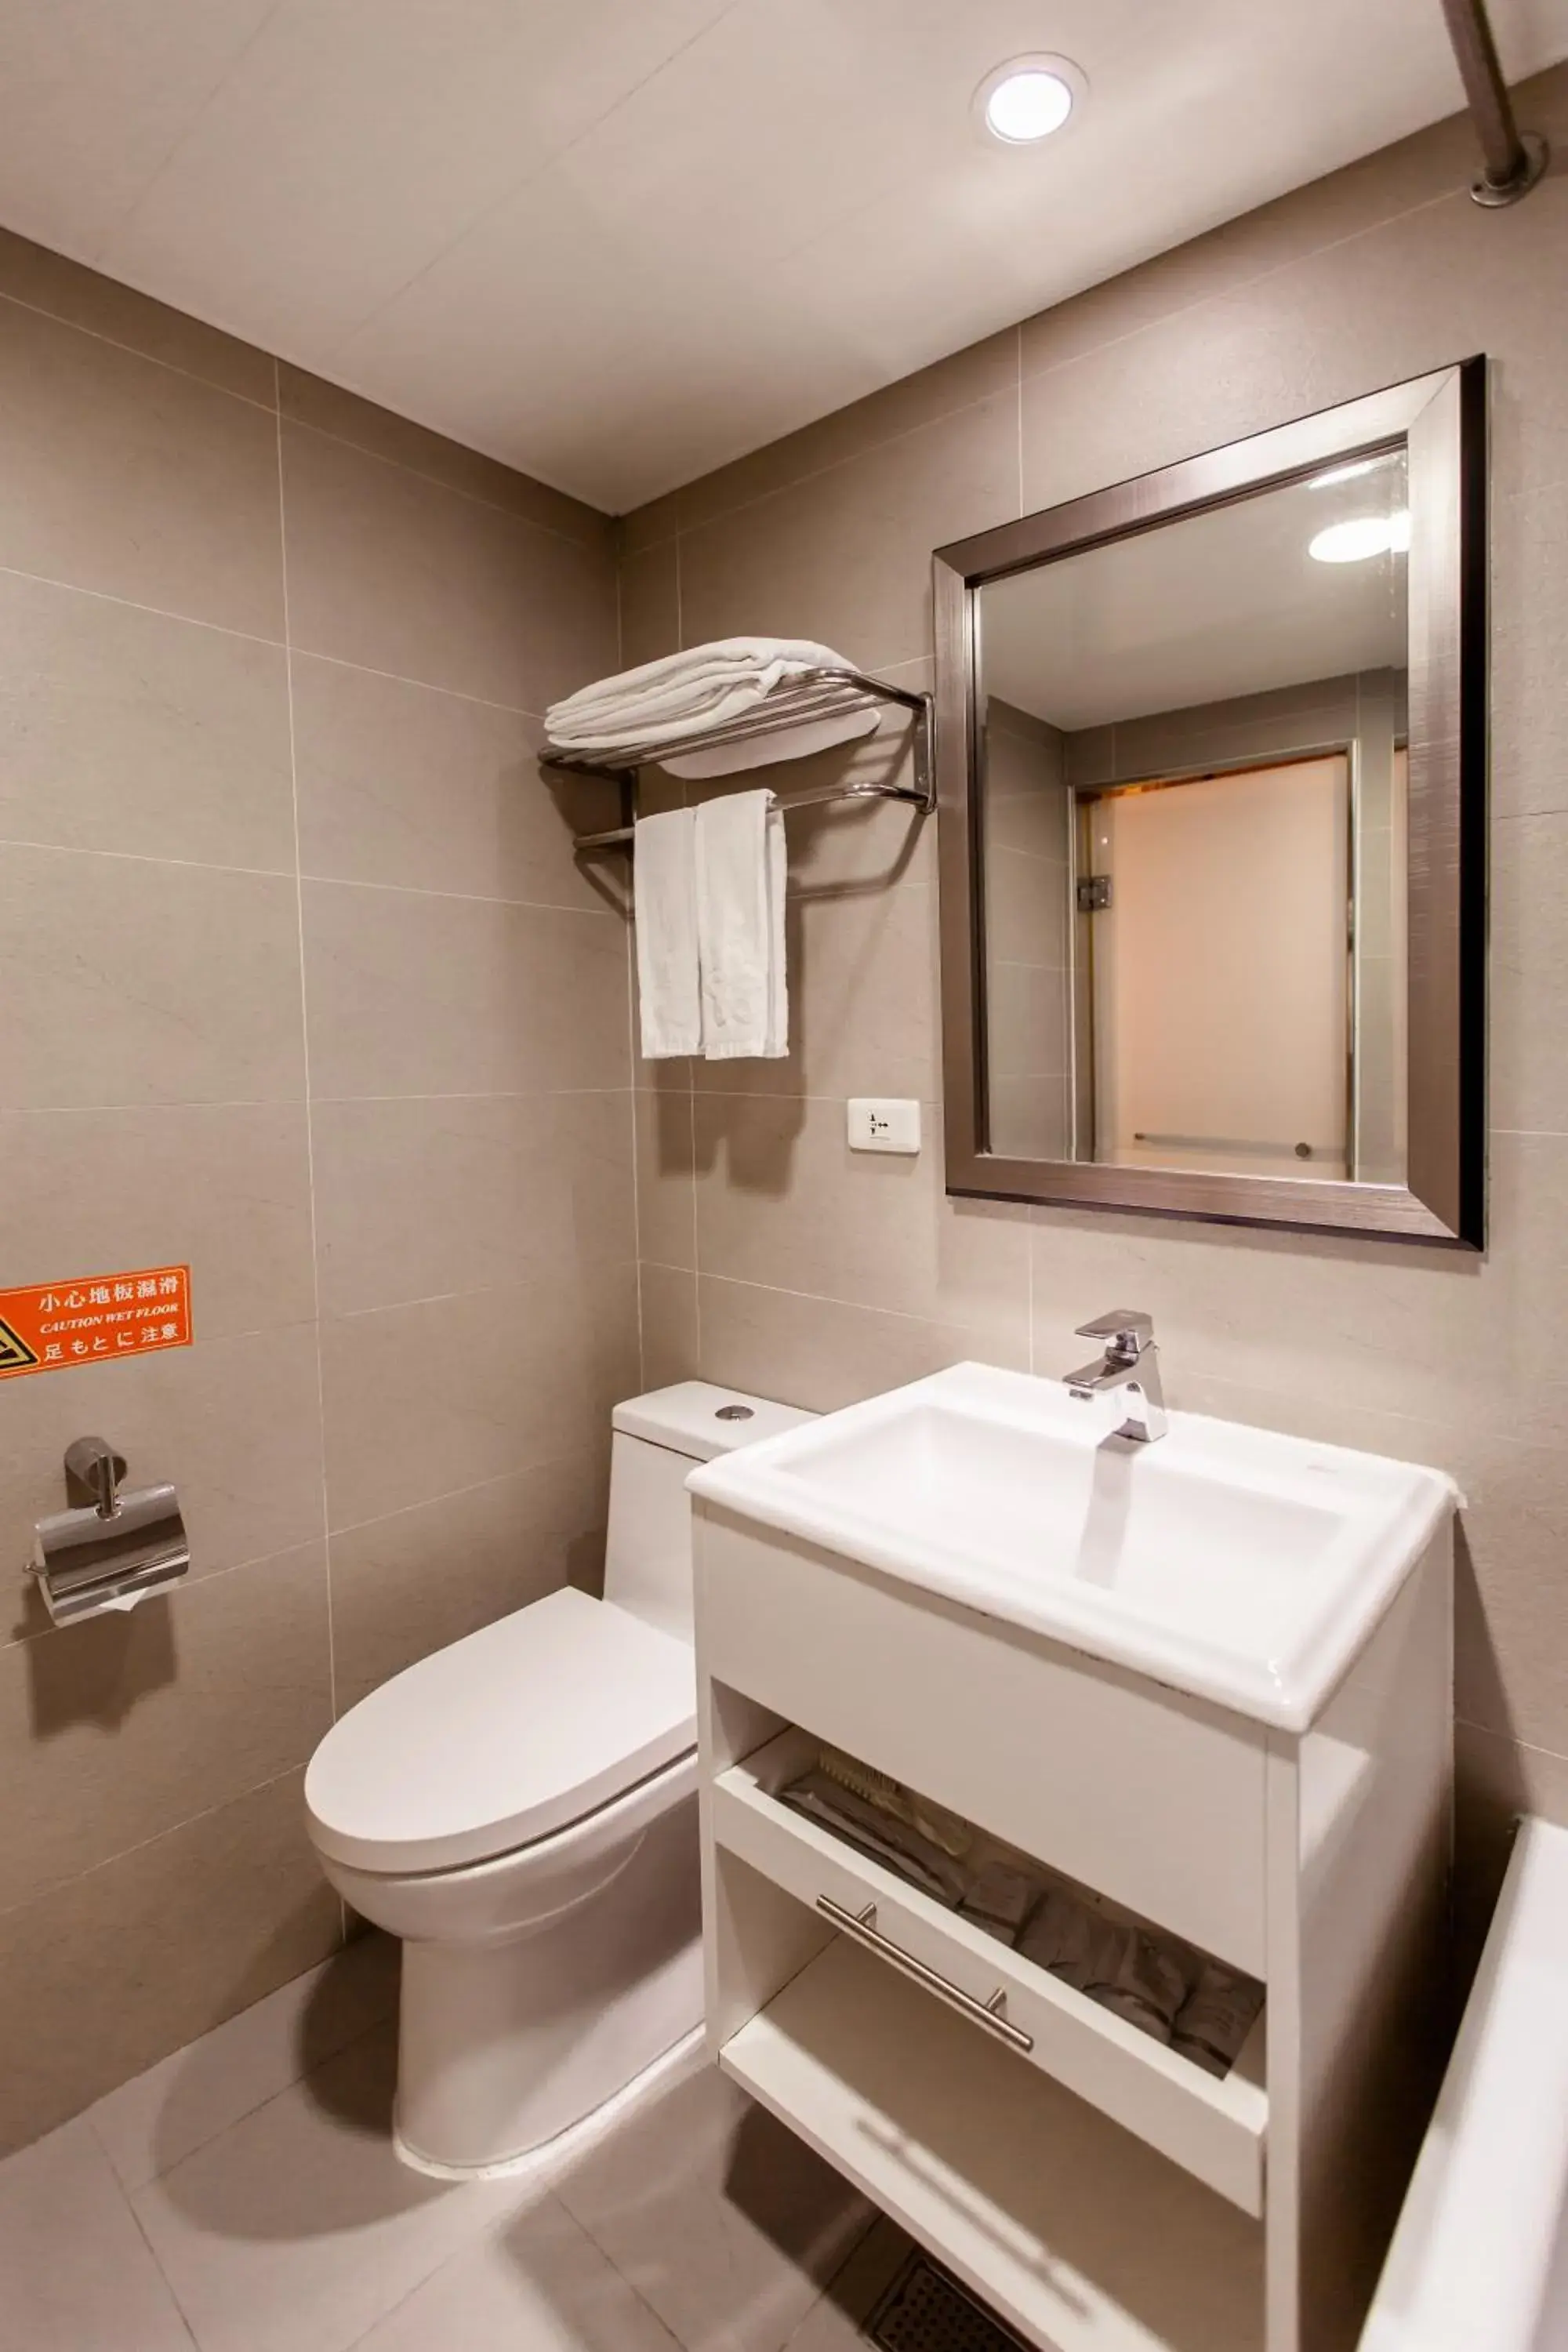 Bathroom in Kingshi Hotel